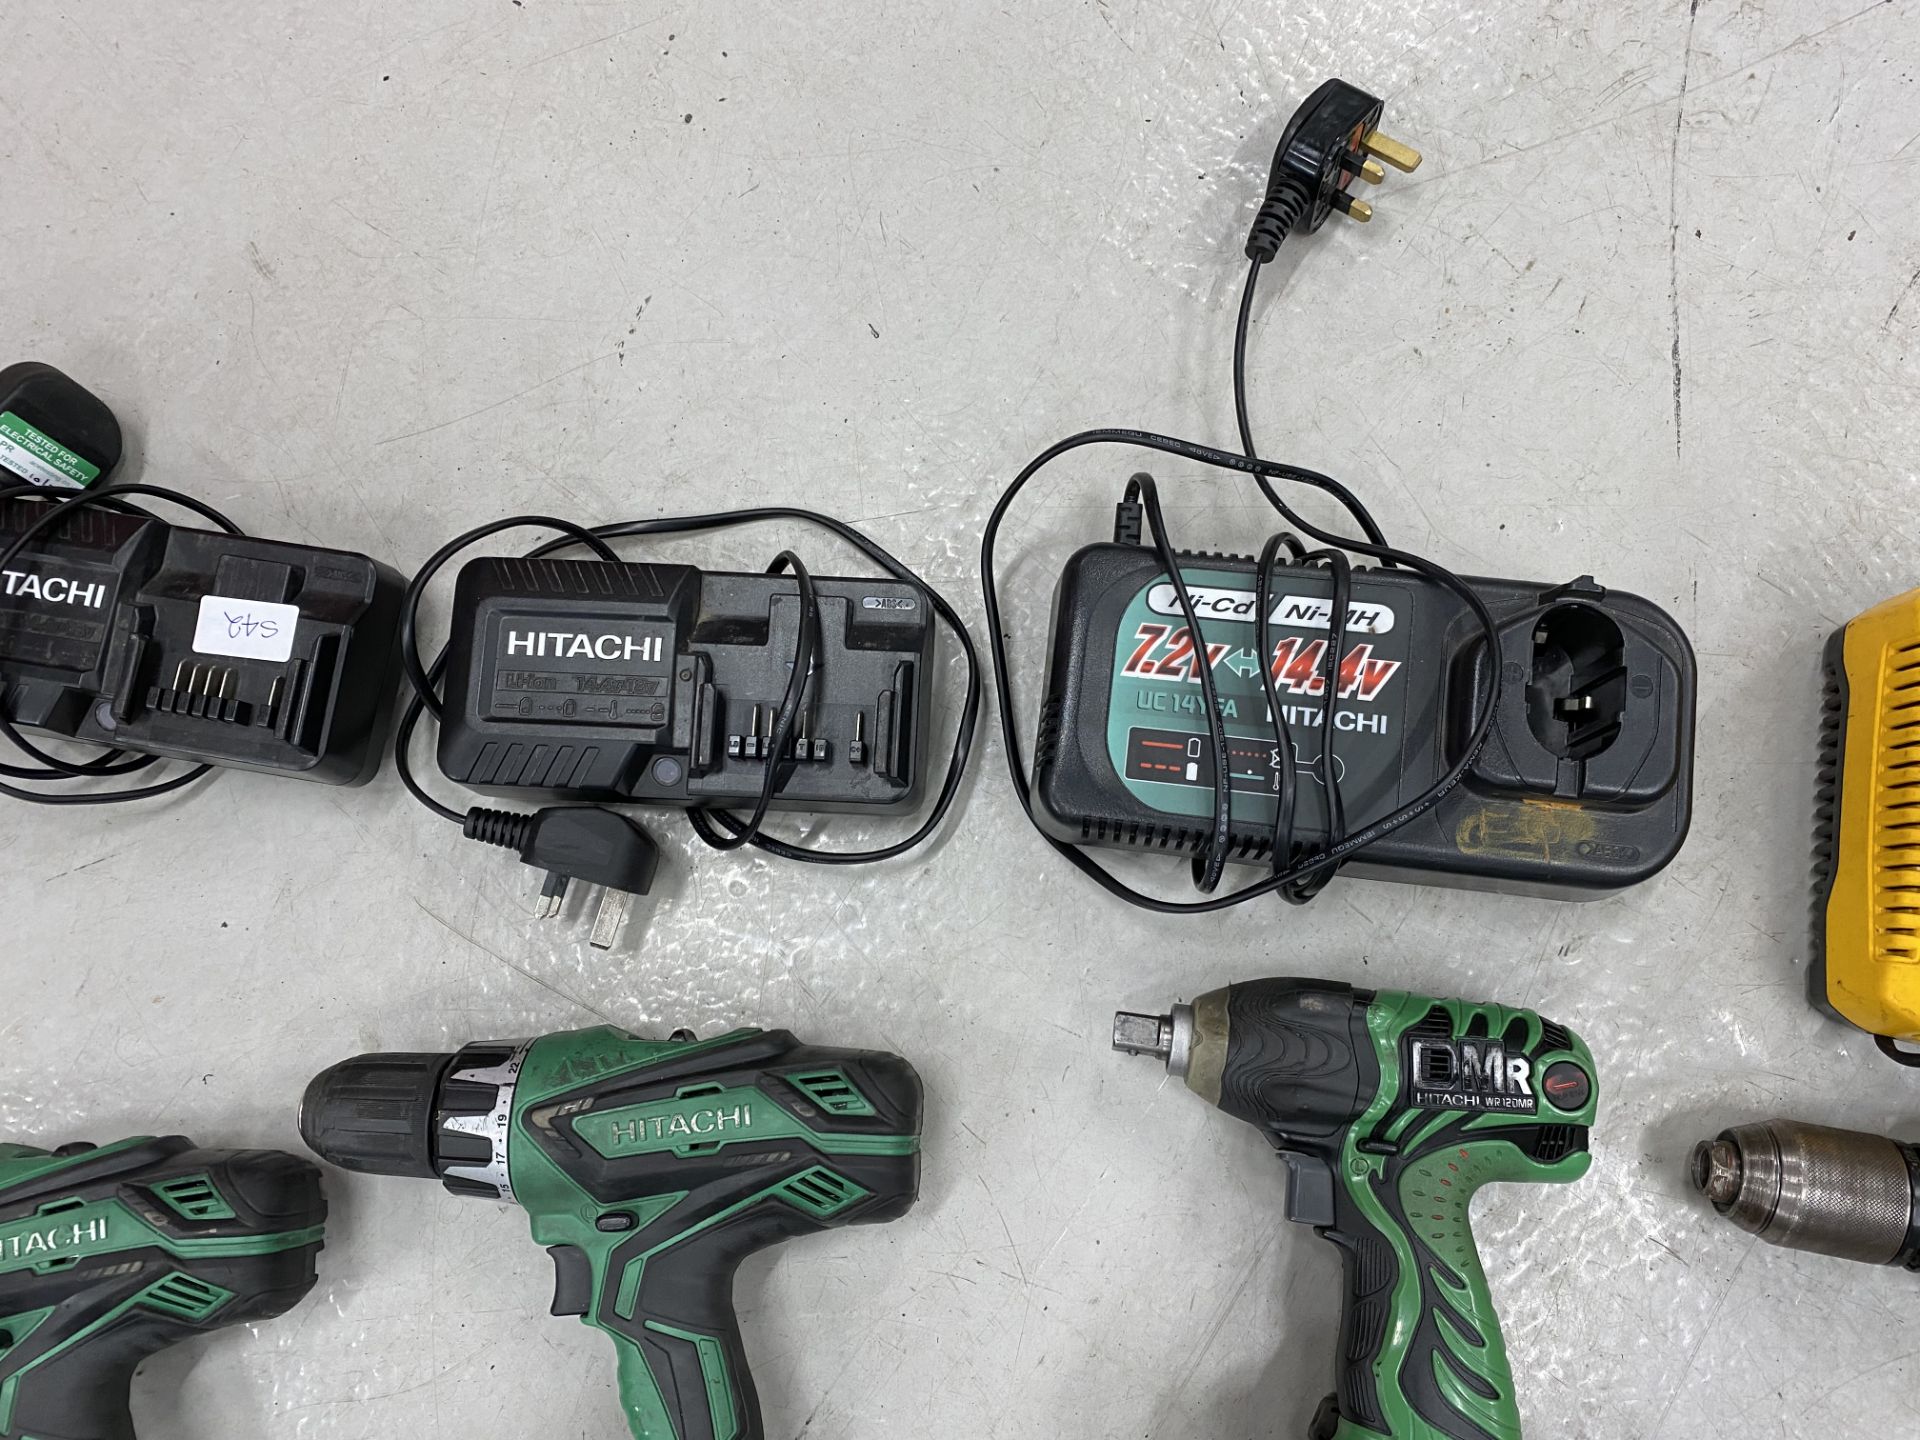 Battery hand tools to include 2 x Hitachi DV18 DGL cordless combi drills, 1 x Titan T1-526com - Image 5 of 6